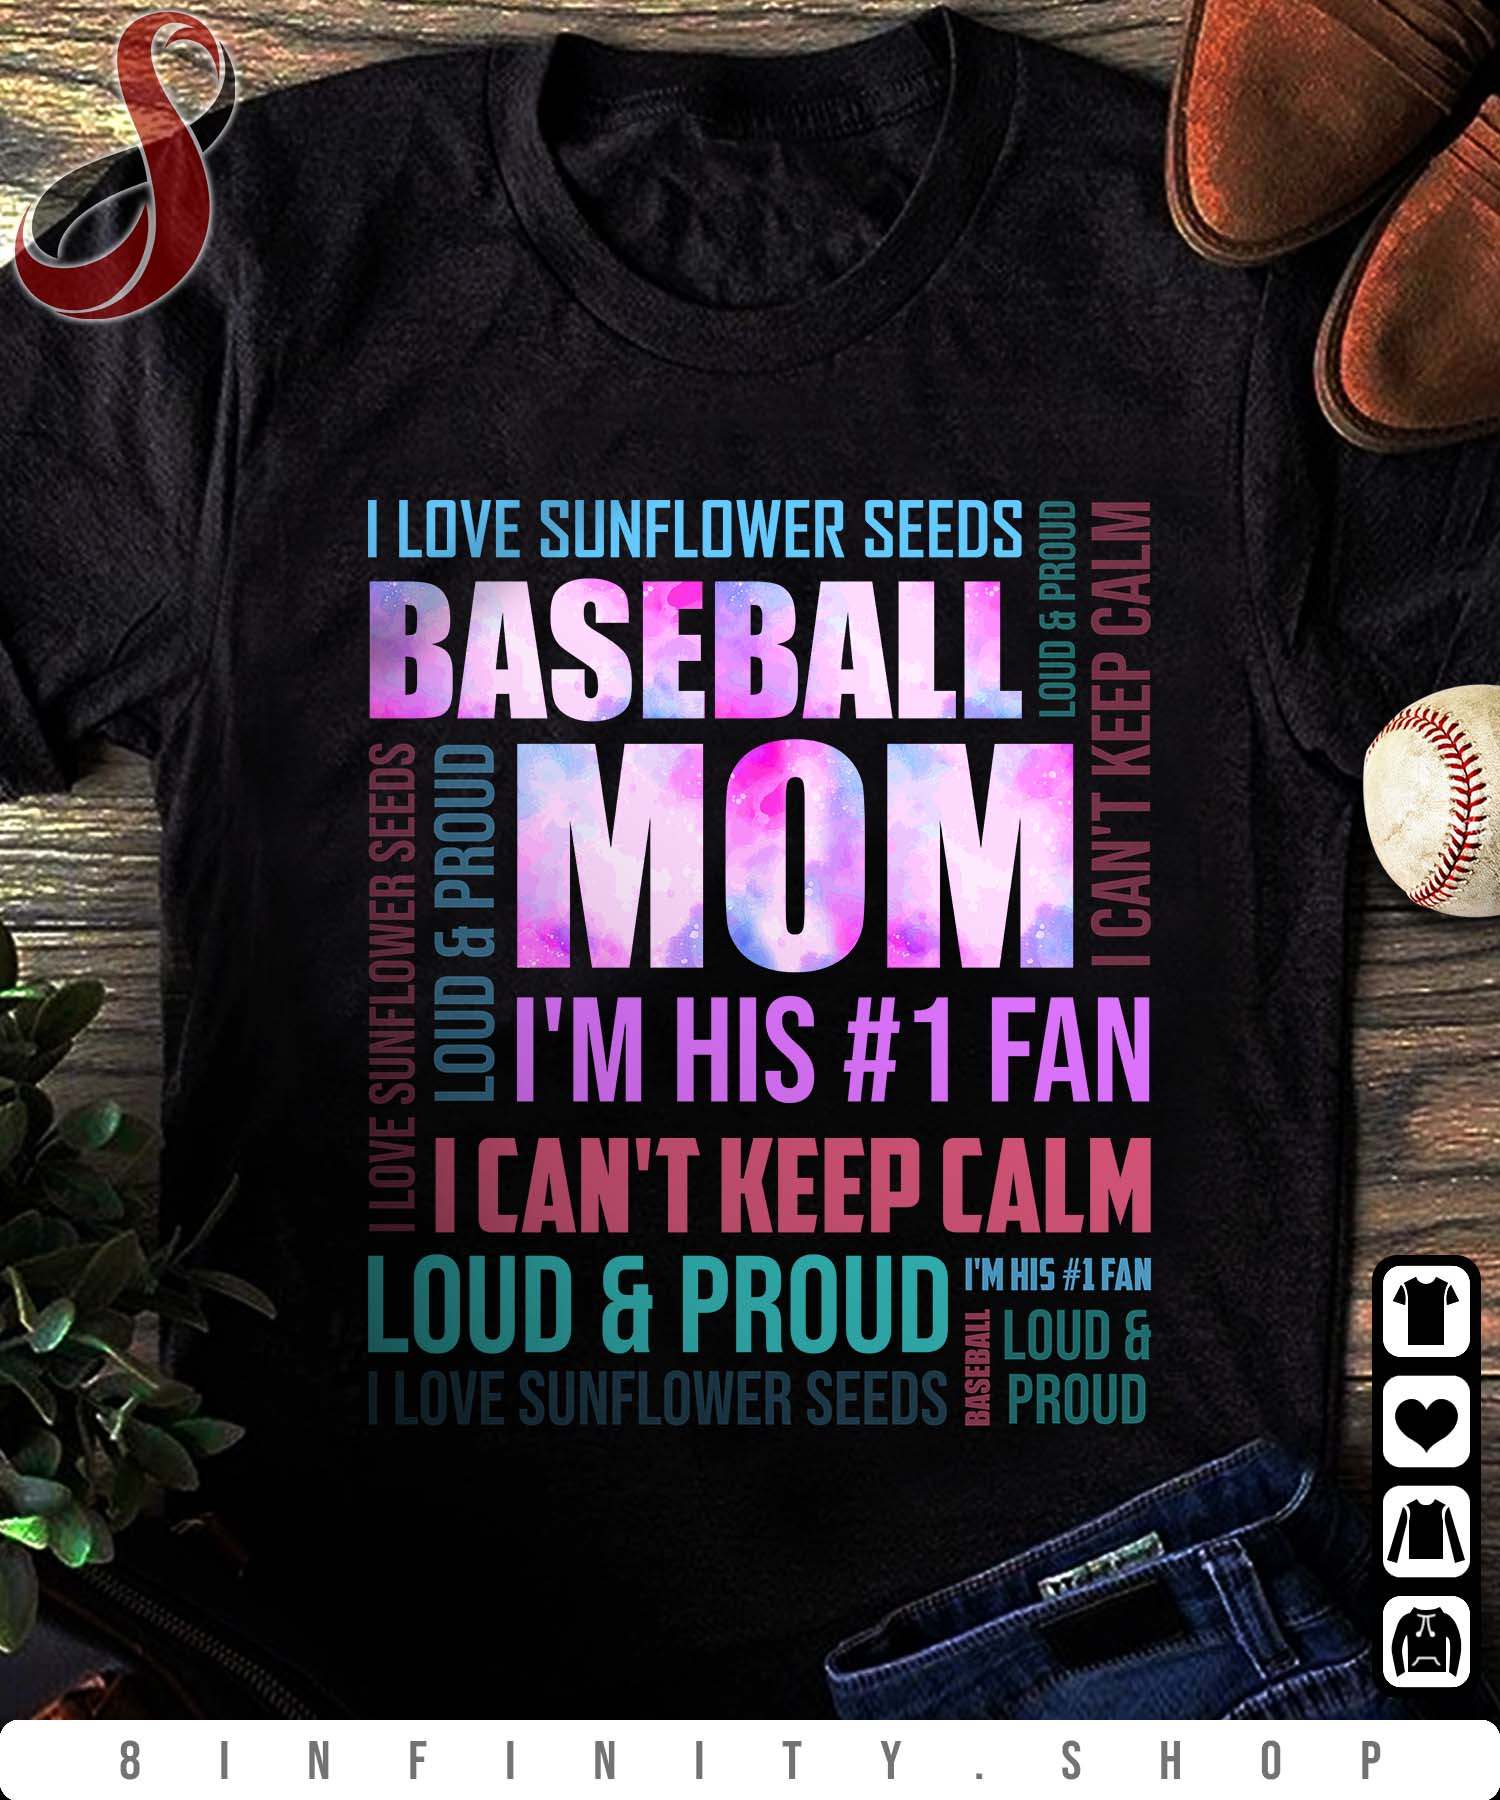 I love sunflower seeds, baseball mom - Mother's day gift